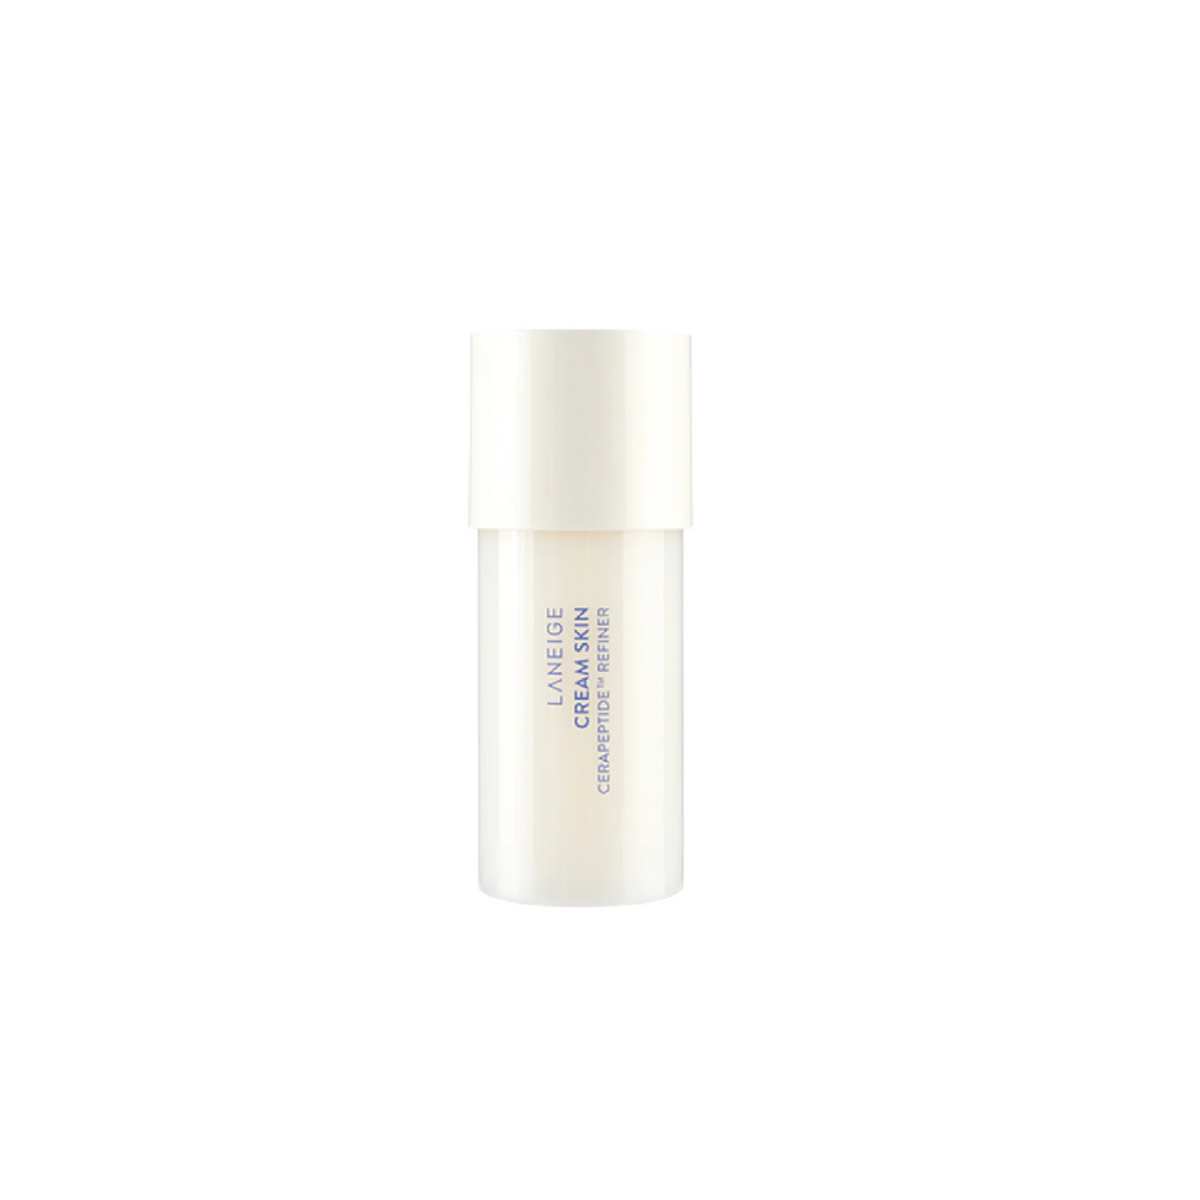 LANEIGE Cream Skin Cerapeptide Refiner (50ml)